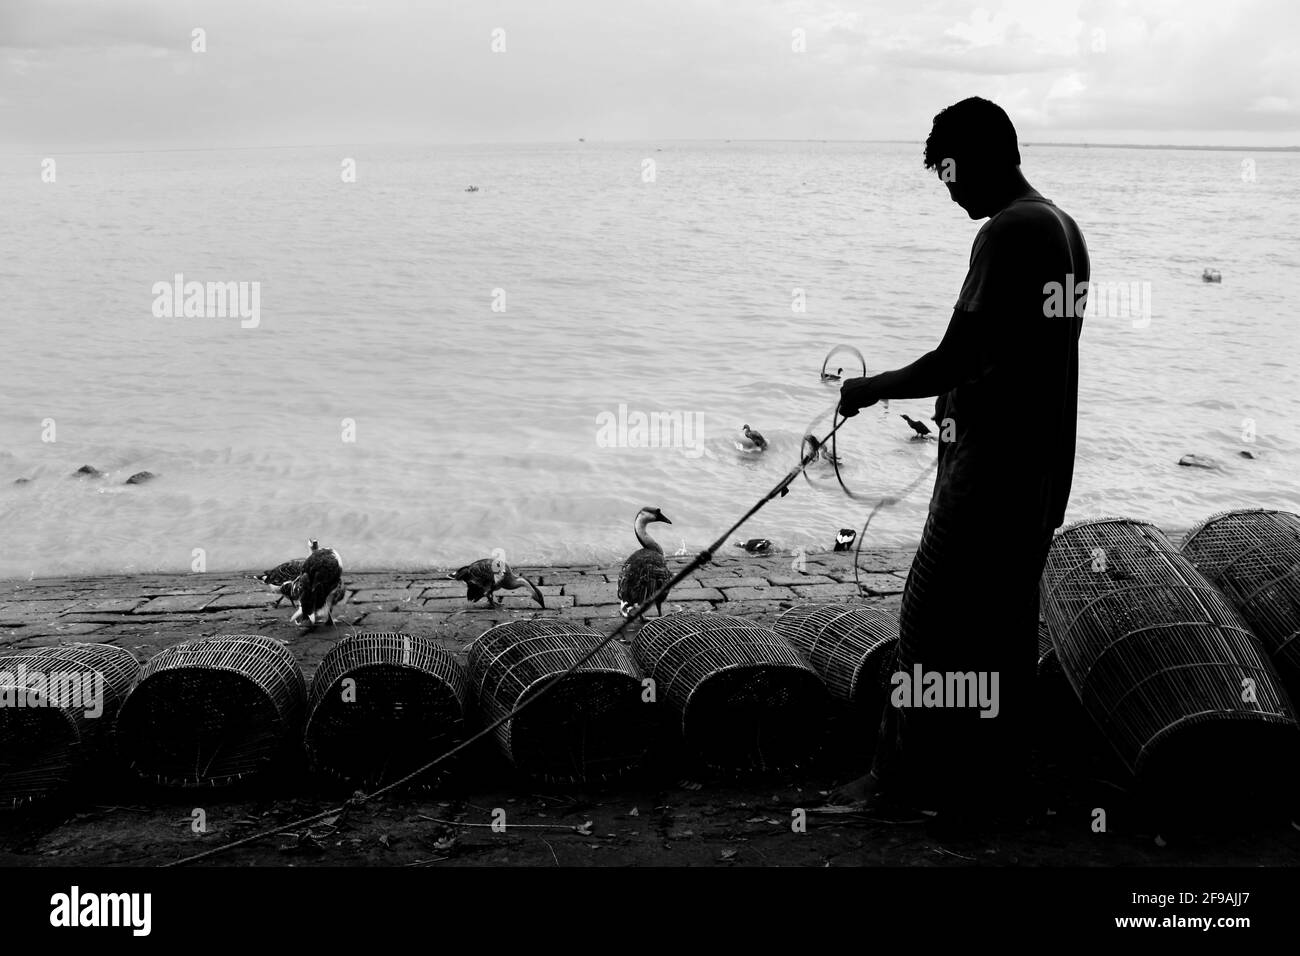 Pescatore in preparazione per la pesca con gabbia e corda sulla riva del fiume ho catturato questa immagine il 15 settembre 2020 da Chandpur, Bangladesh Foto Stock